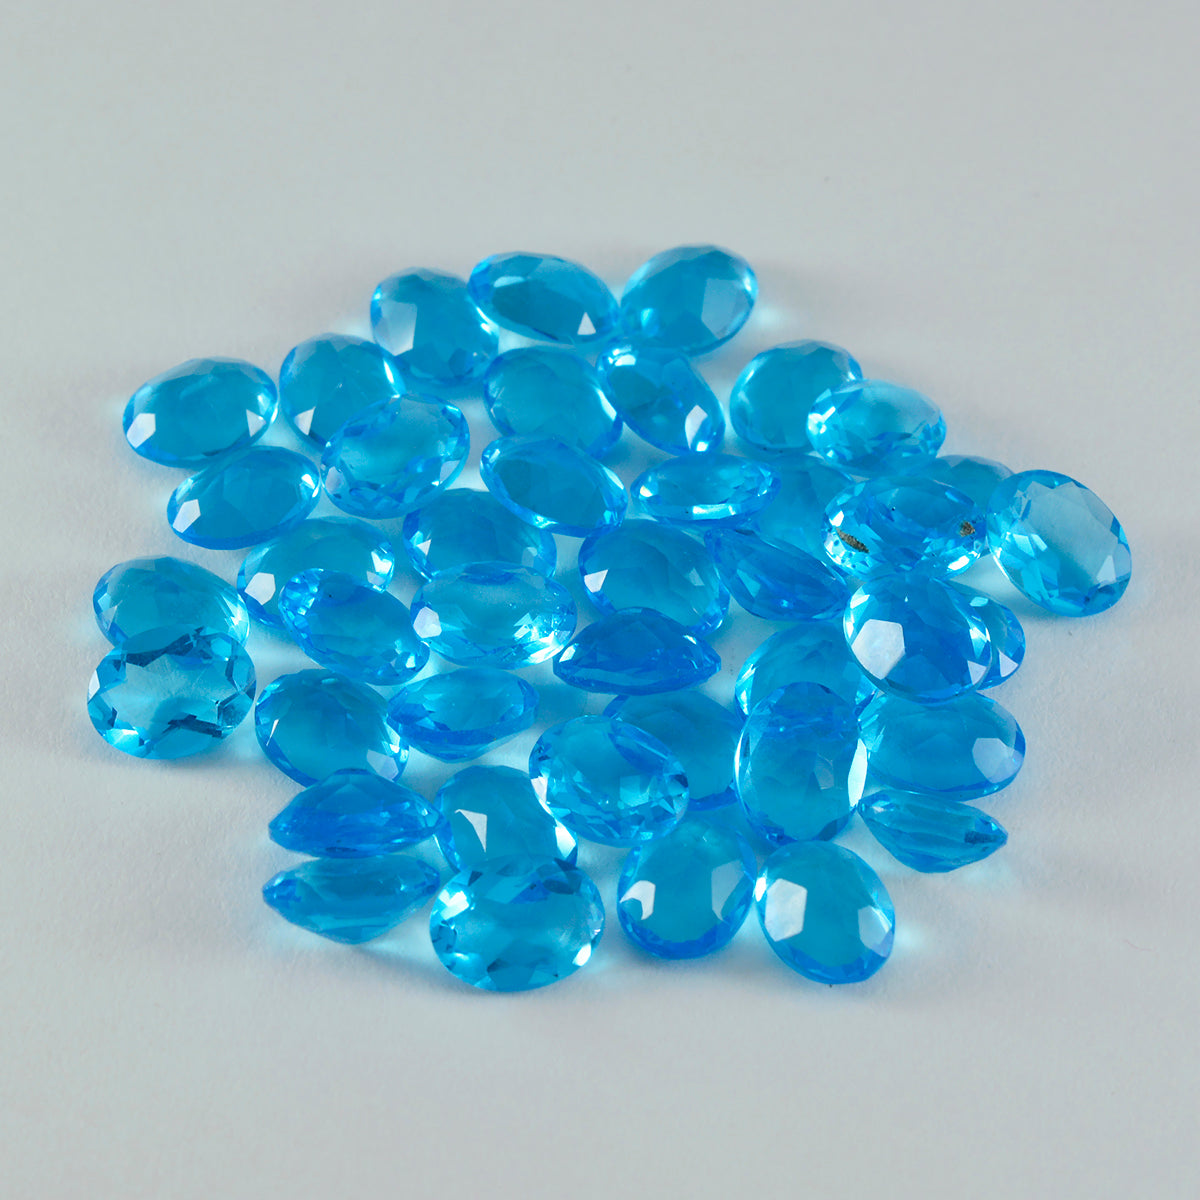 Riyogems 1 Stück blauer Topas, CZ, facettiert, 5 x 7 mm, ovale Form, Edelsteine von guter Qualität